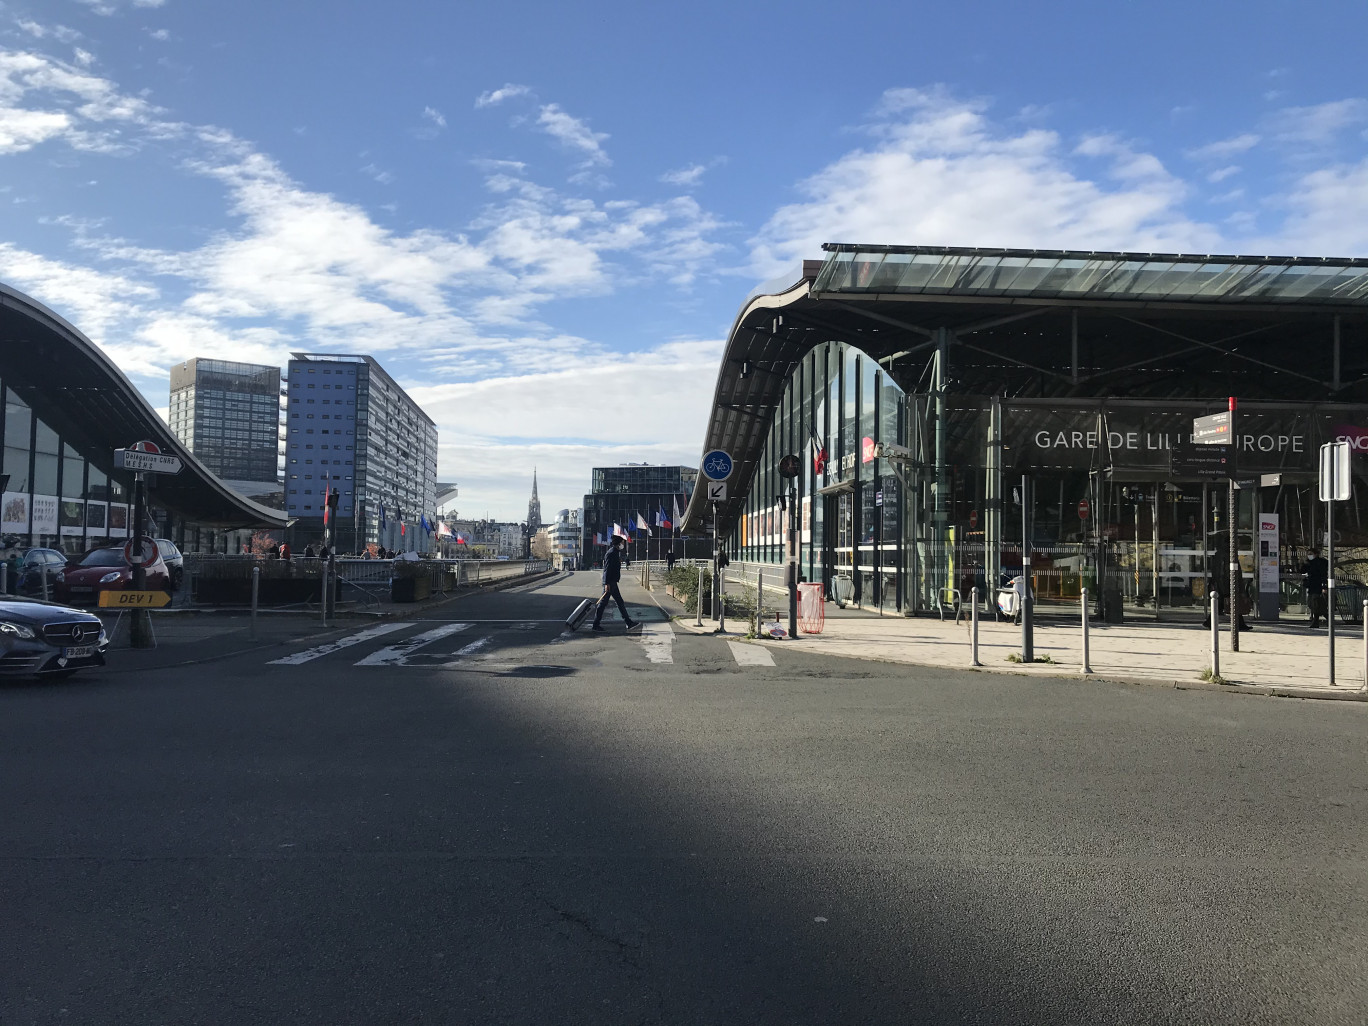 Photo : Olivier RAZEMON pour DSI
Devant la gare de Lille Europe, déserte, le 9 novembre
